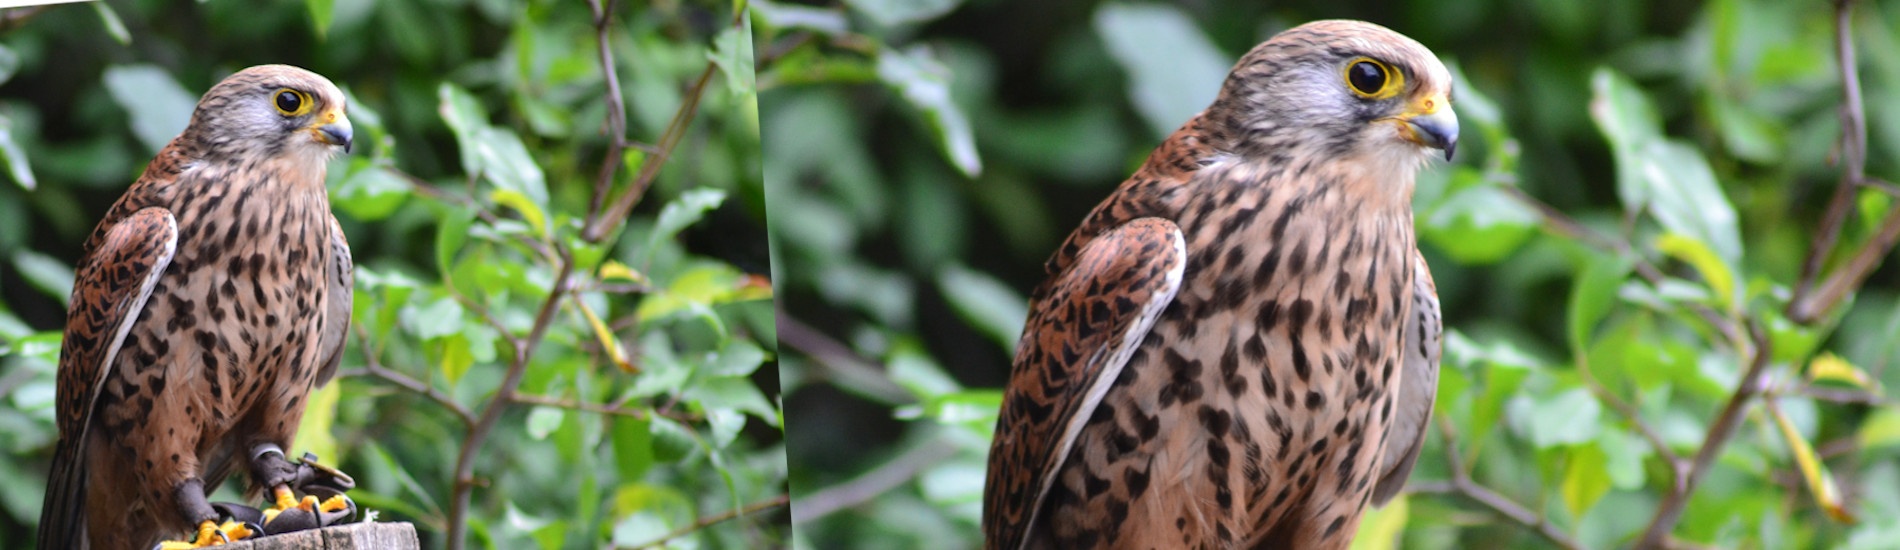 Oiseau Faucon brun dans la nature et la foret de Faucon en Provence Vaucluse